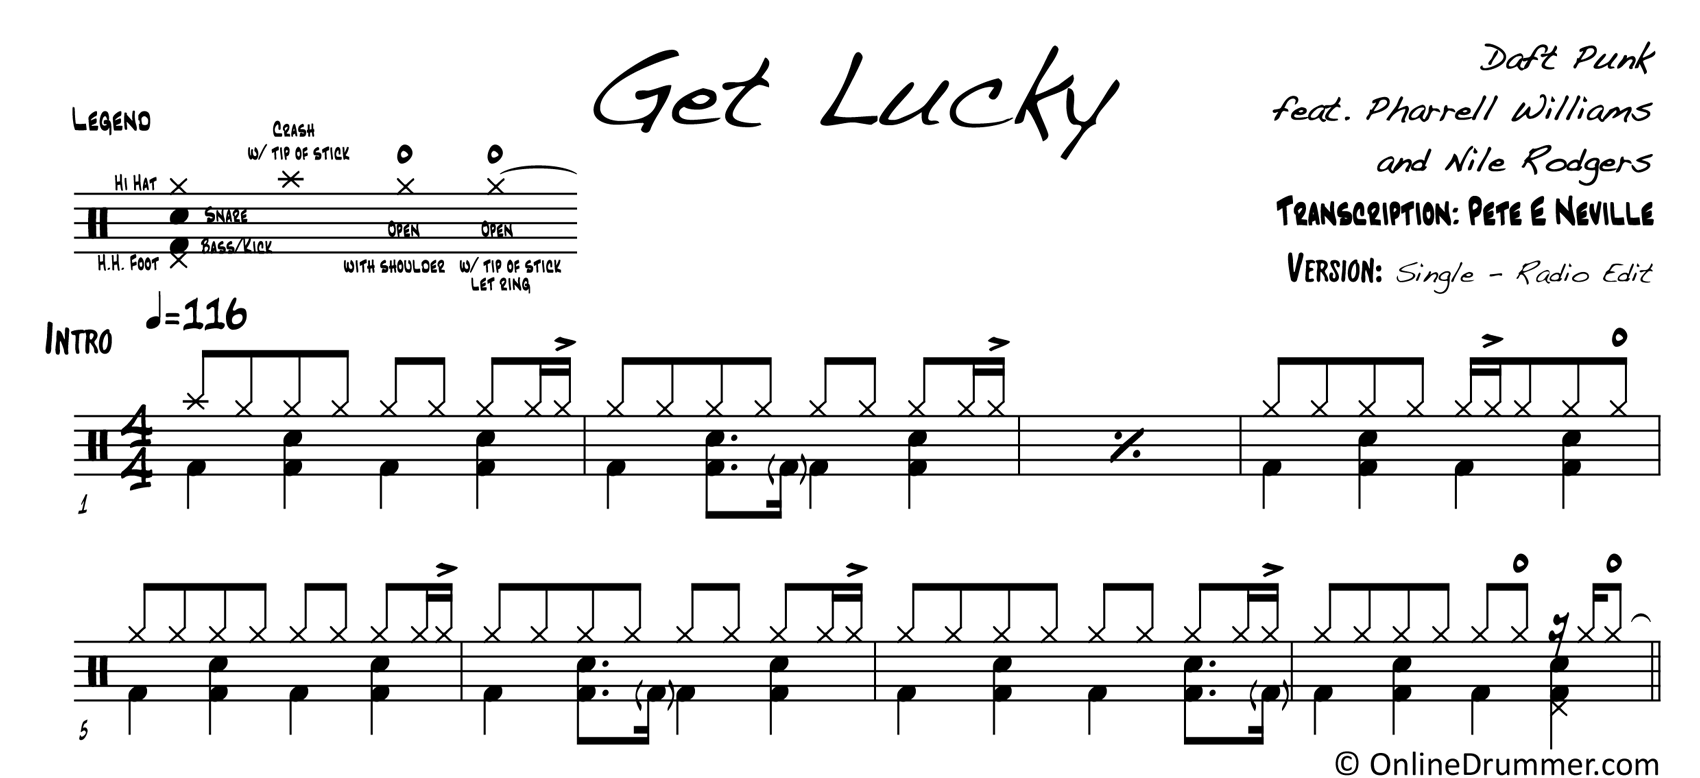 Get Lucky - Daft Punk - Drum Sheet Music